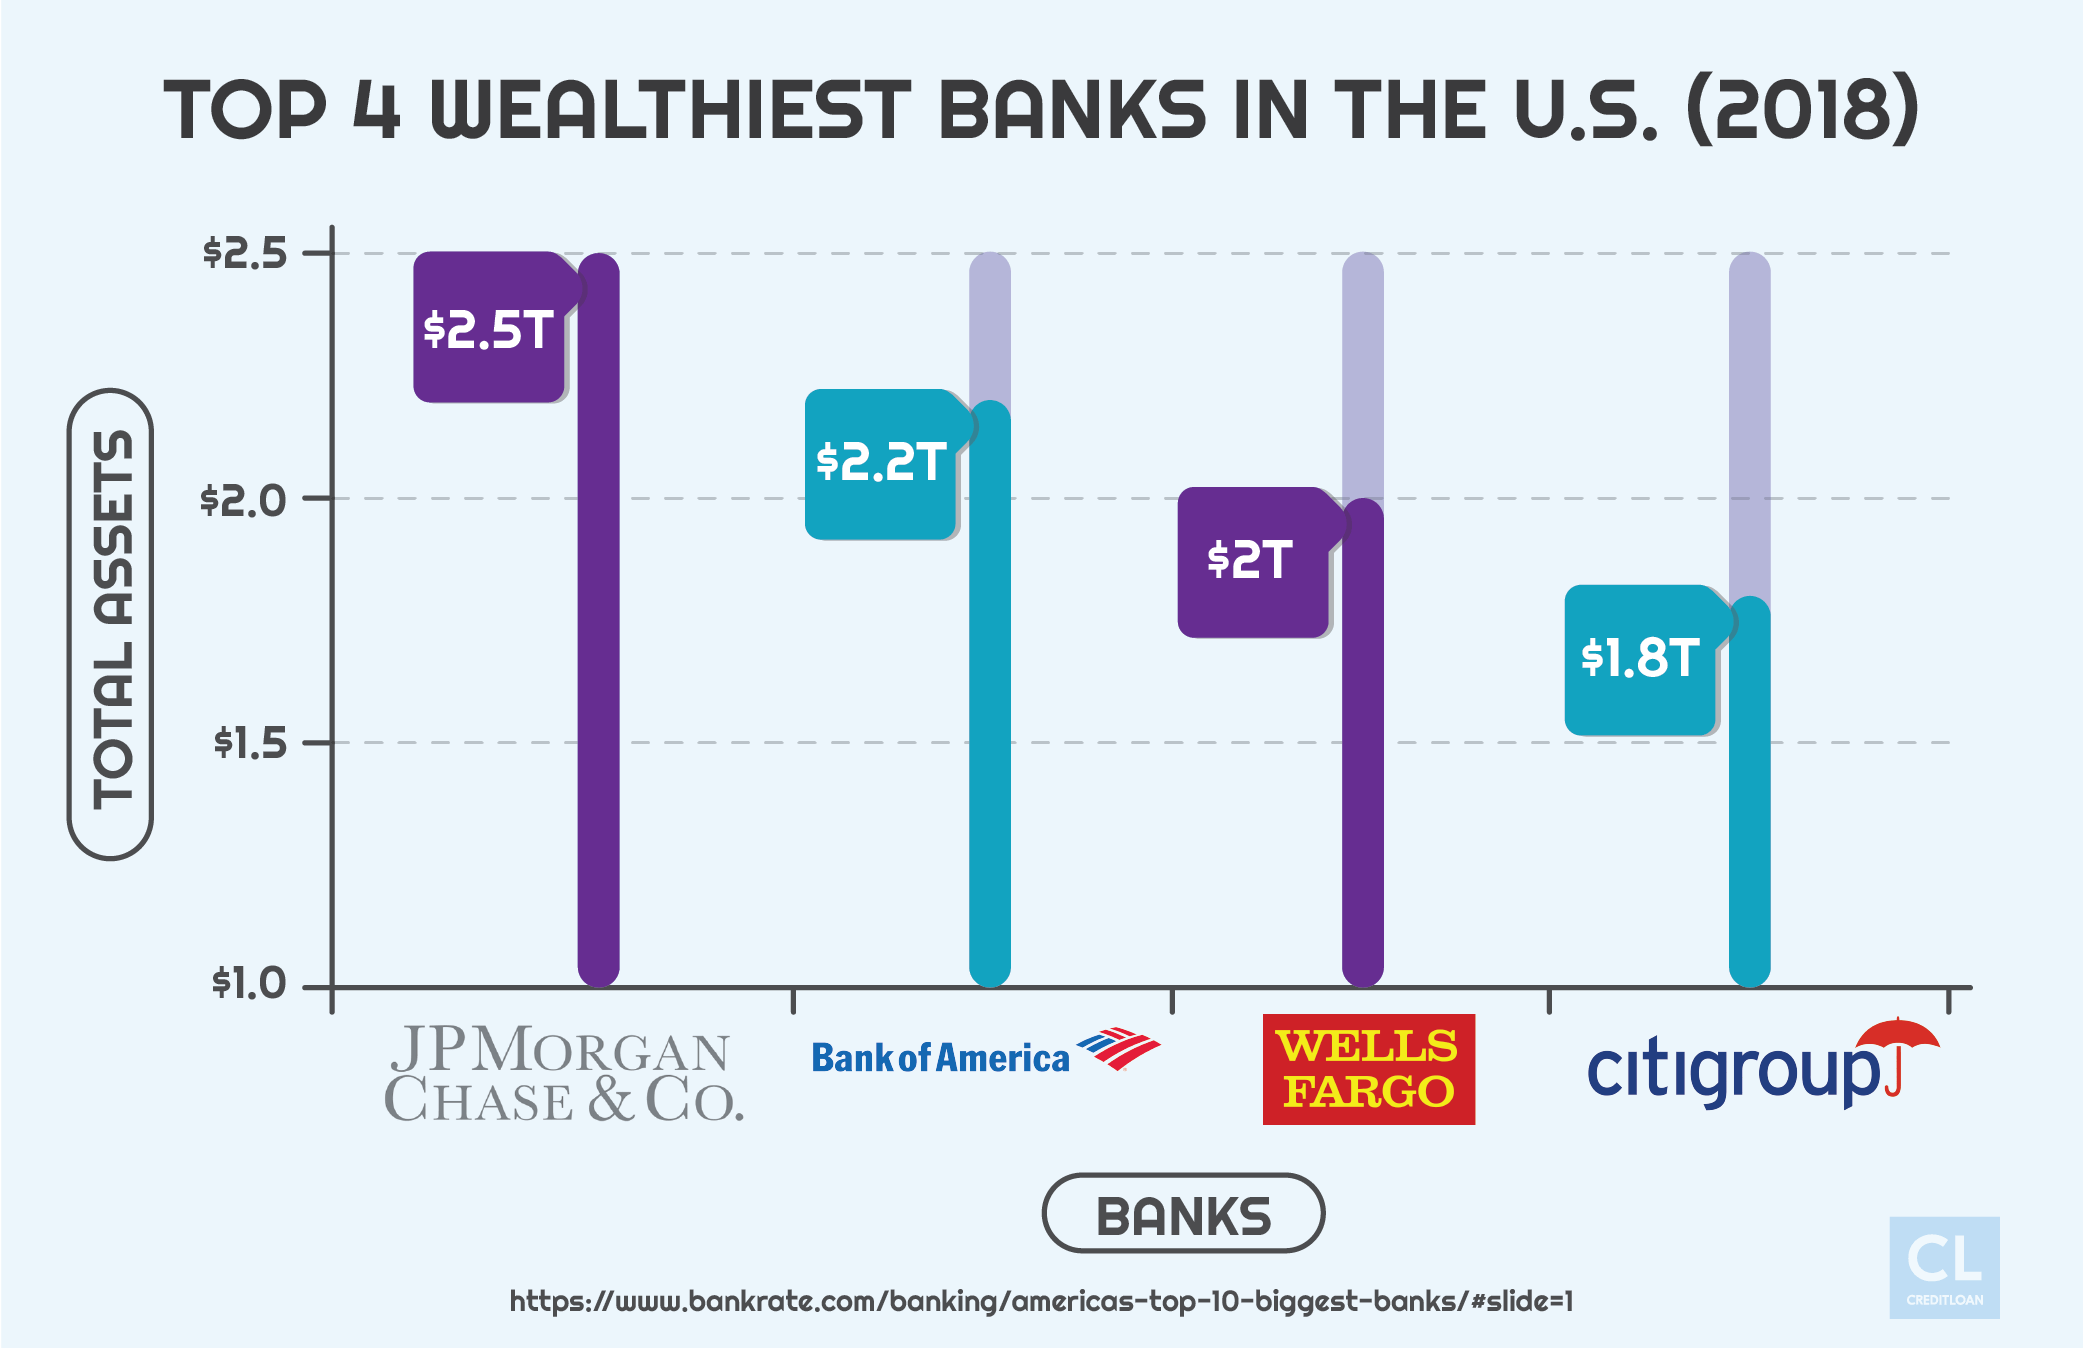 2018 Top 4 Wealthiest Banks in the U.S.